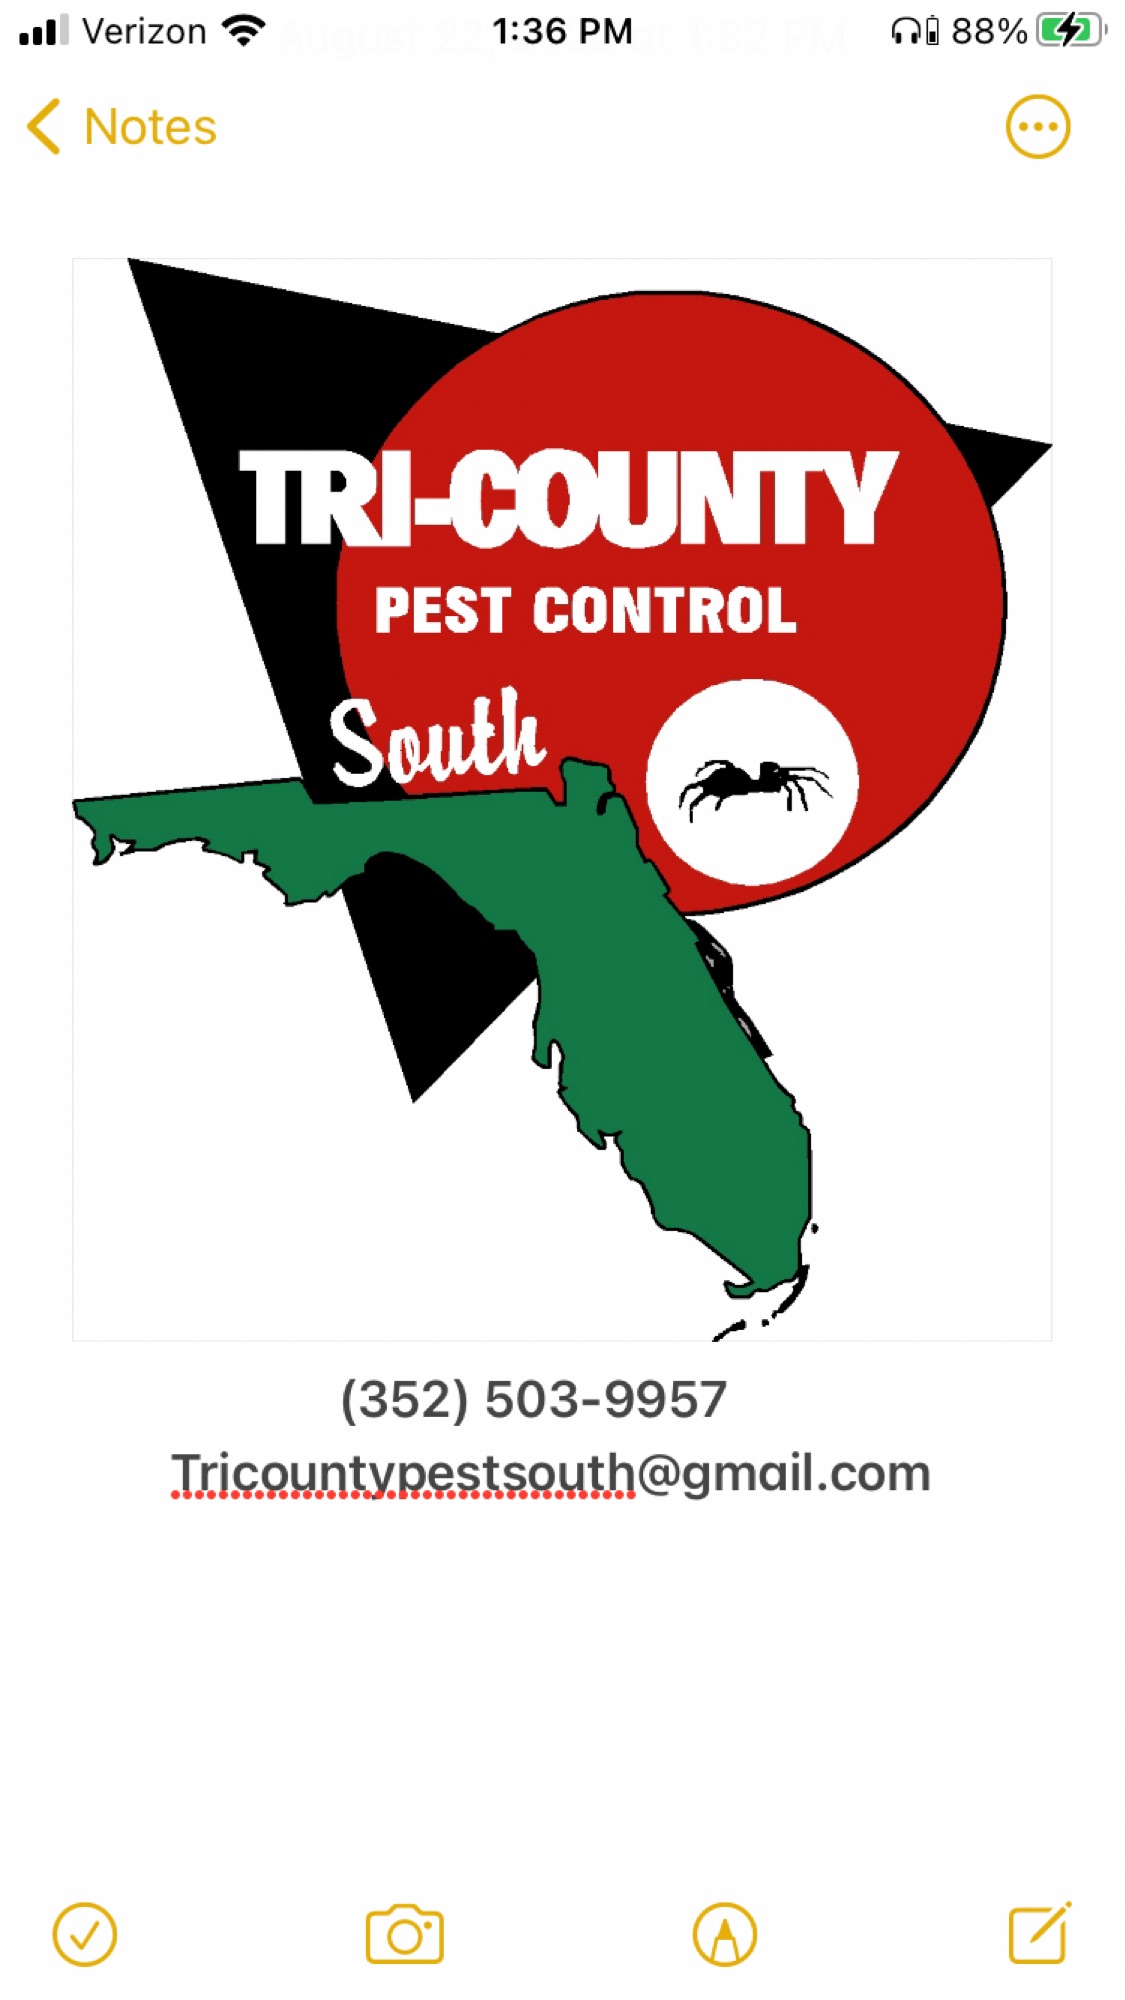 Tri-County Pest Control South, LLC Logo